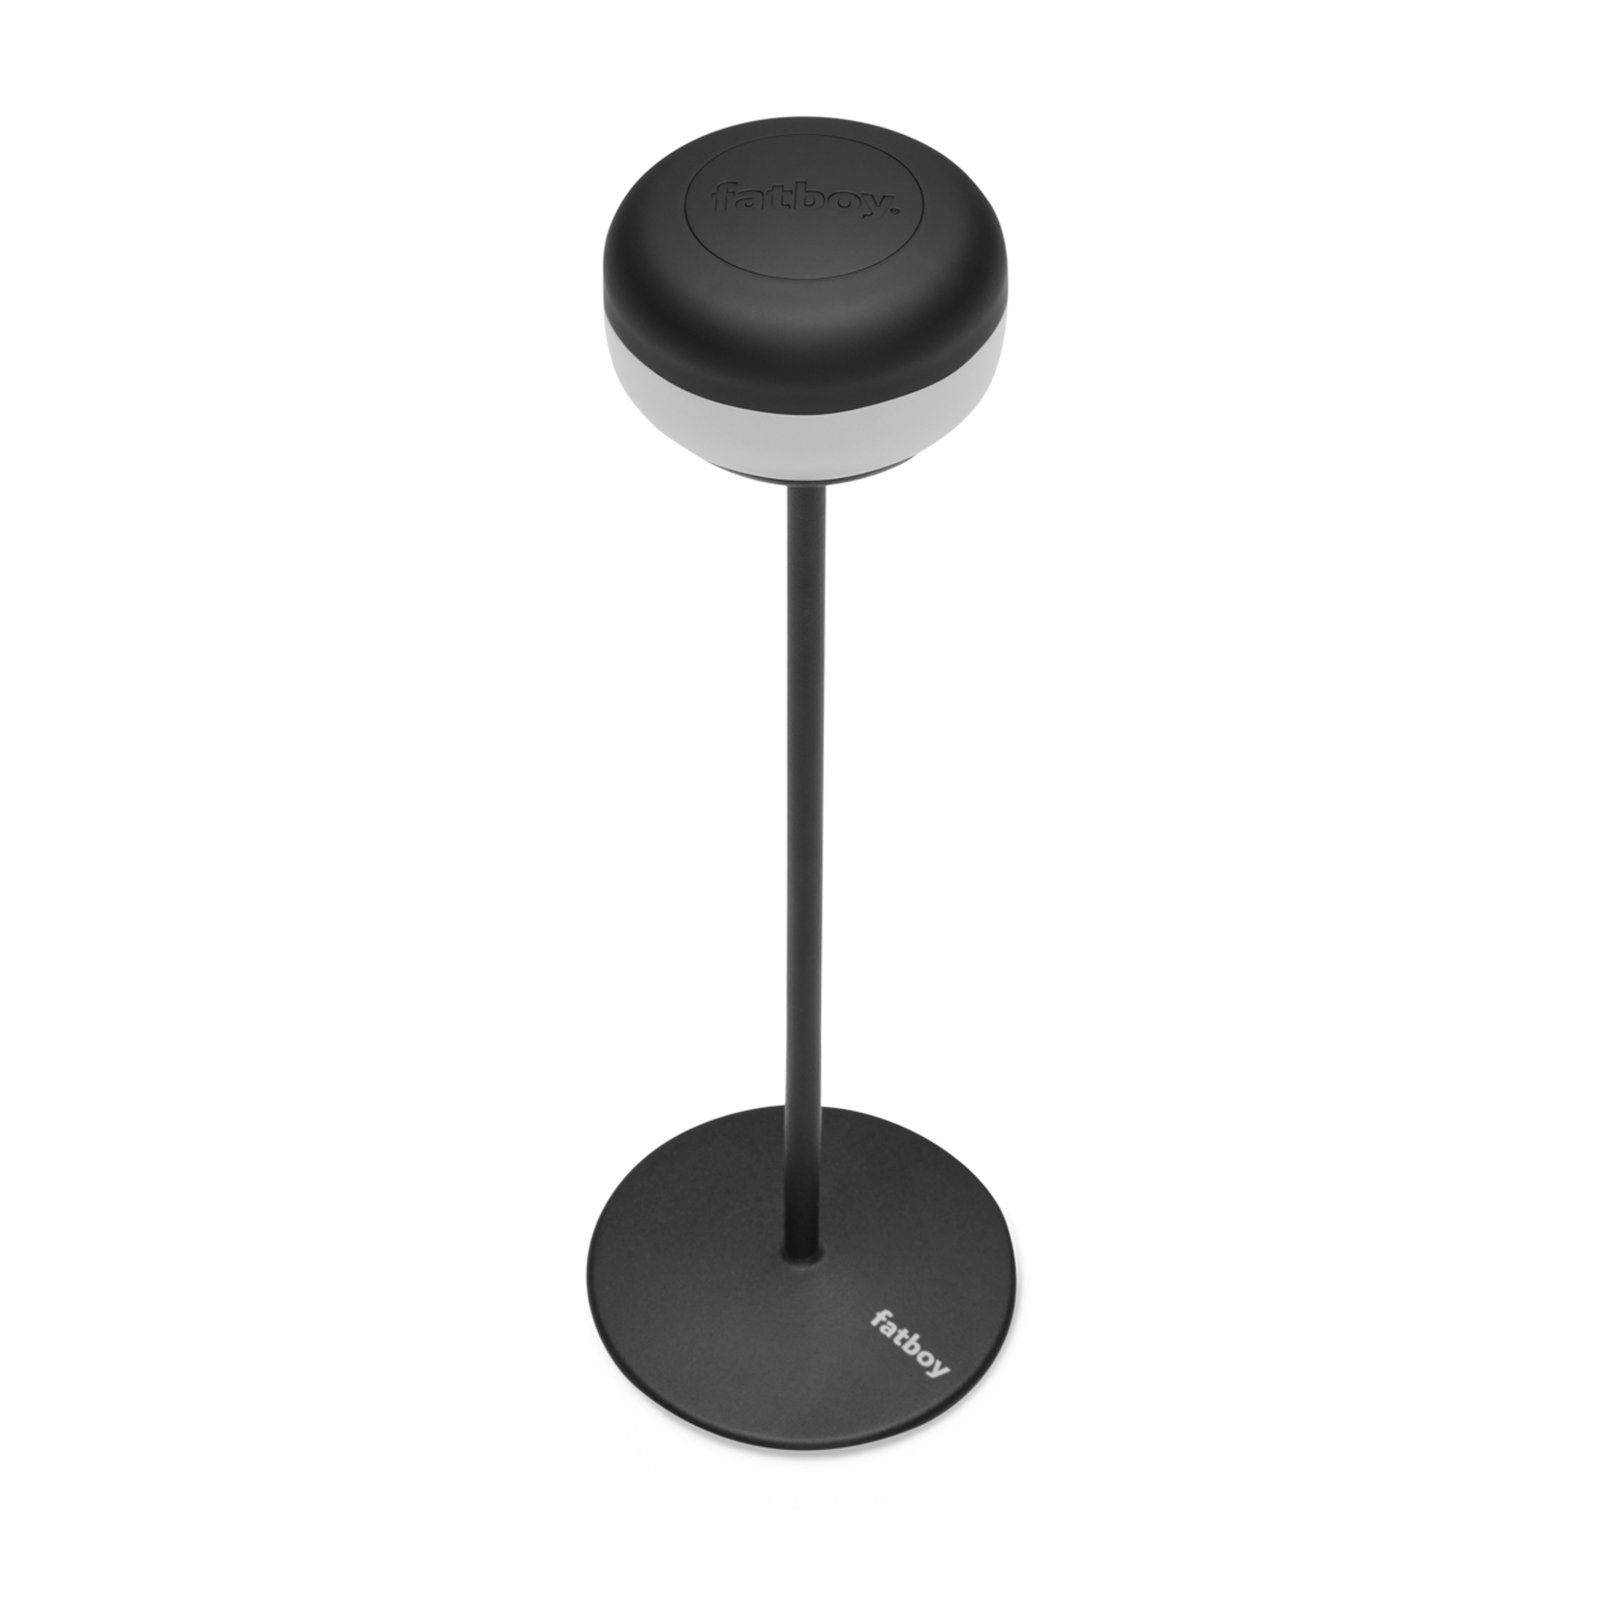 Candeeiro de mesa recarregável Fatboy LED Cheerio, preto, regulável, IP55